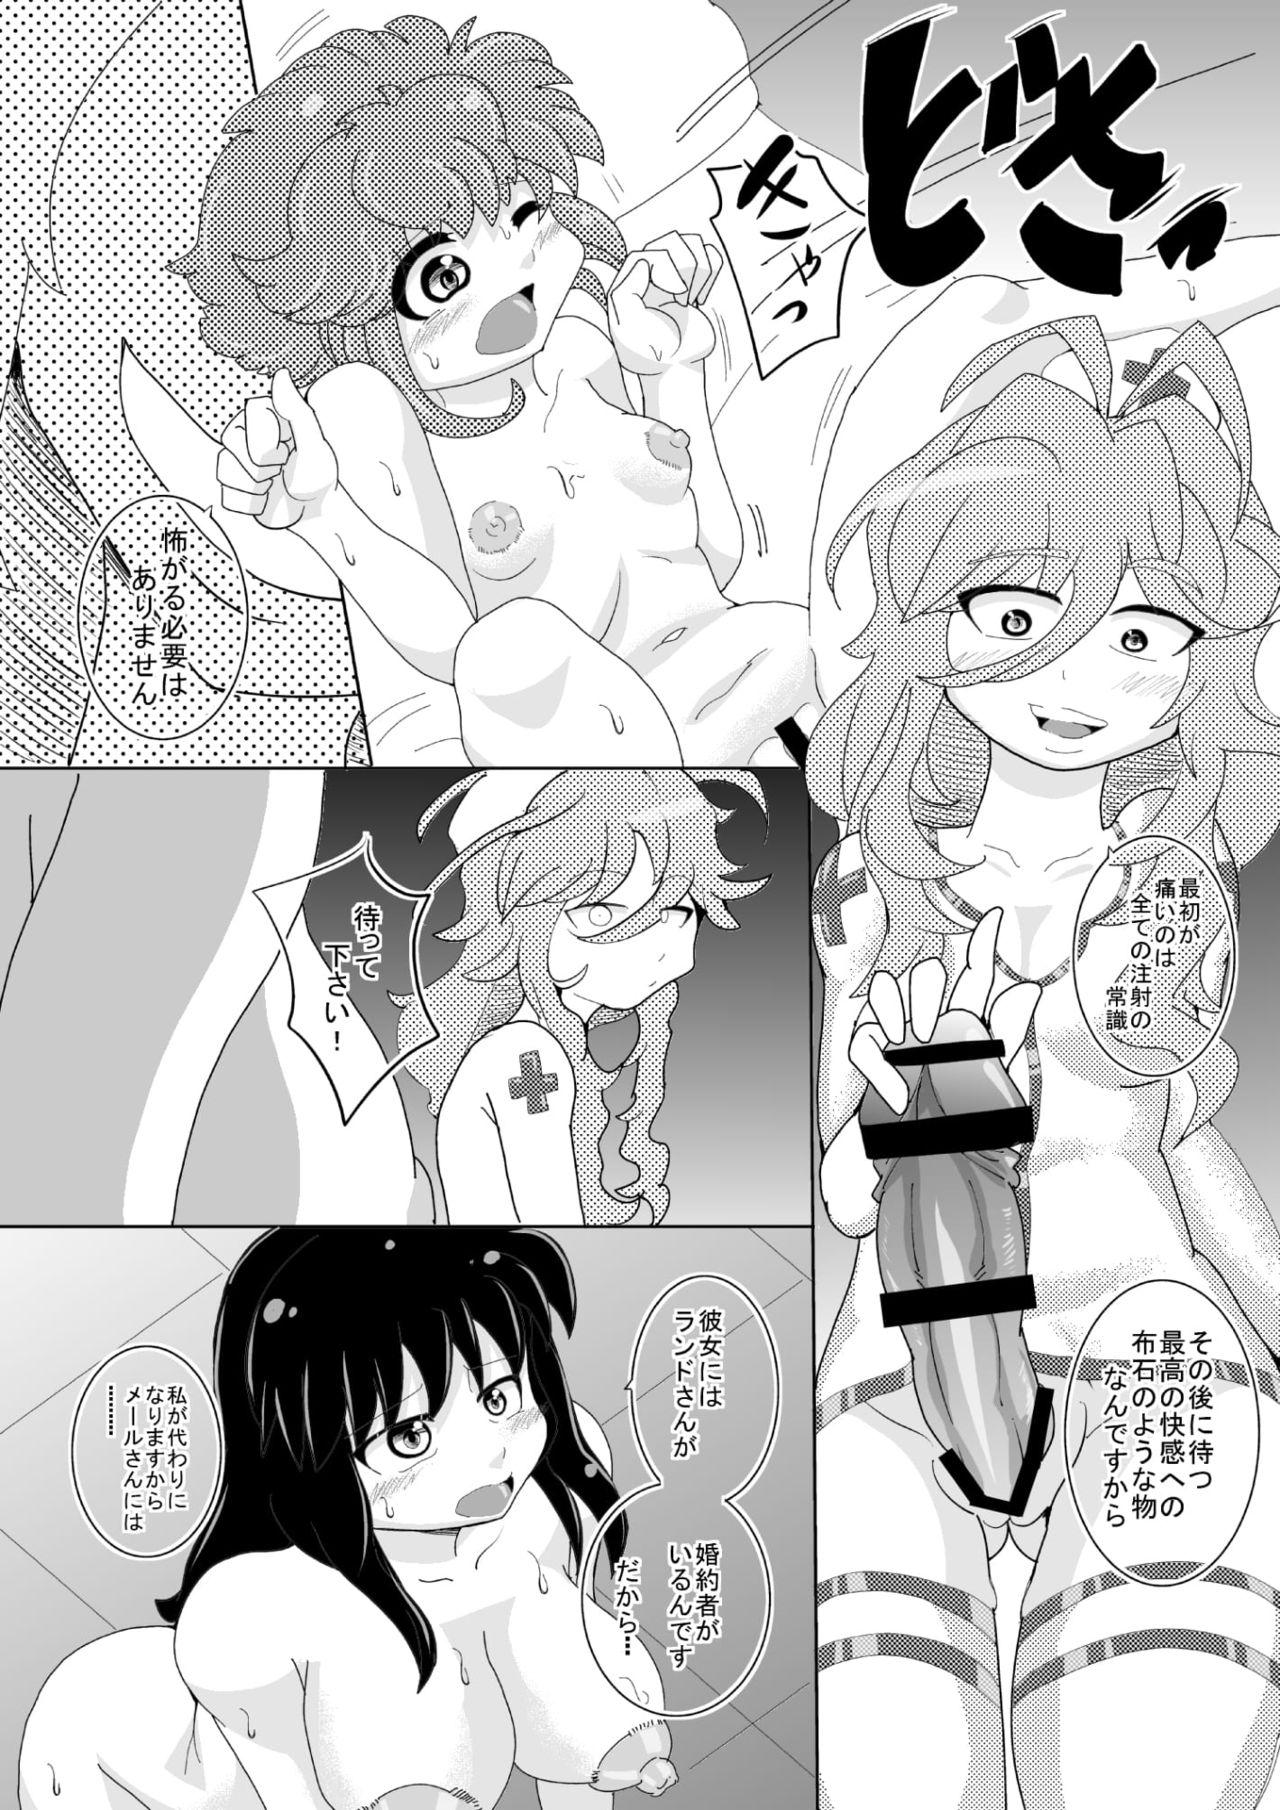 Freak [Seishimentai (Syouryuupen)] Mentananako Z - Ciony-chan Hakai Hen (Super Robot Taisen) - Super robot wars Chaturbate - Page 10